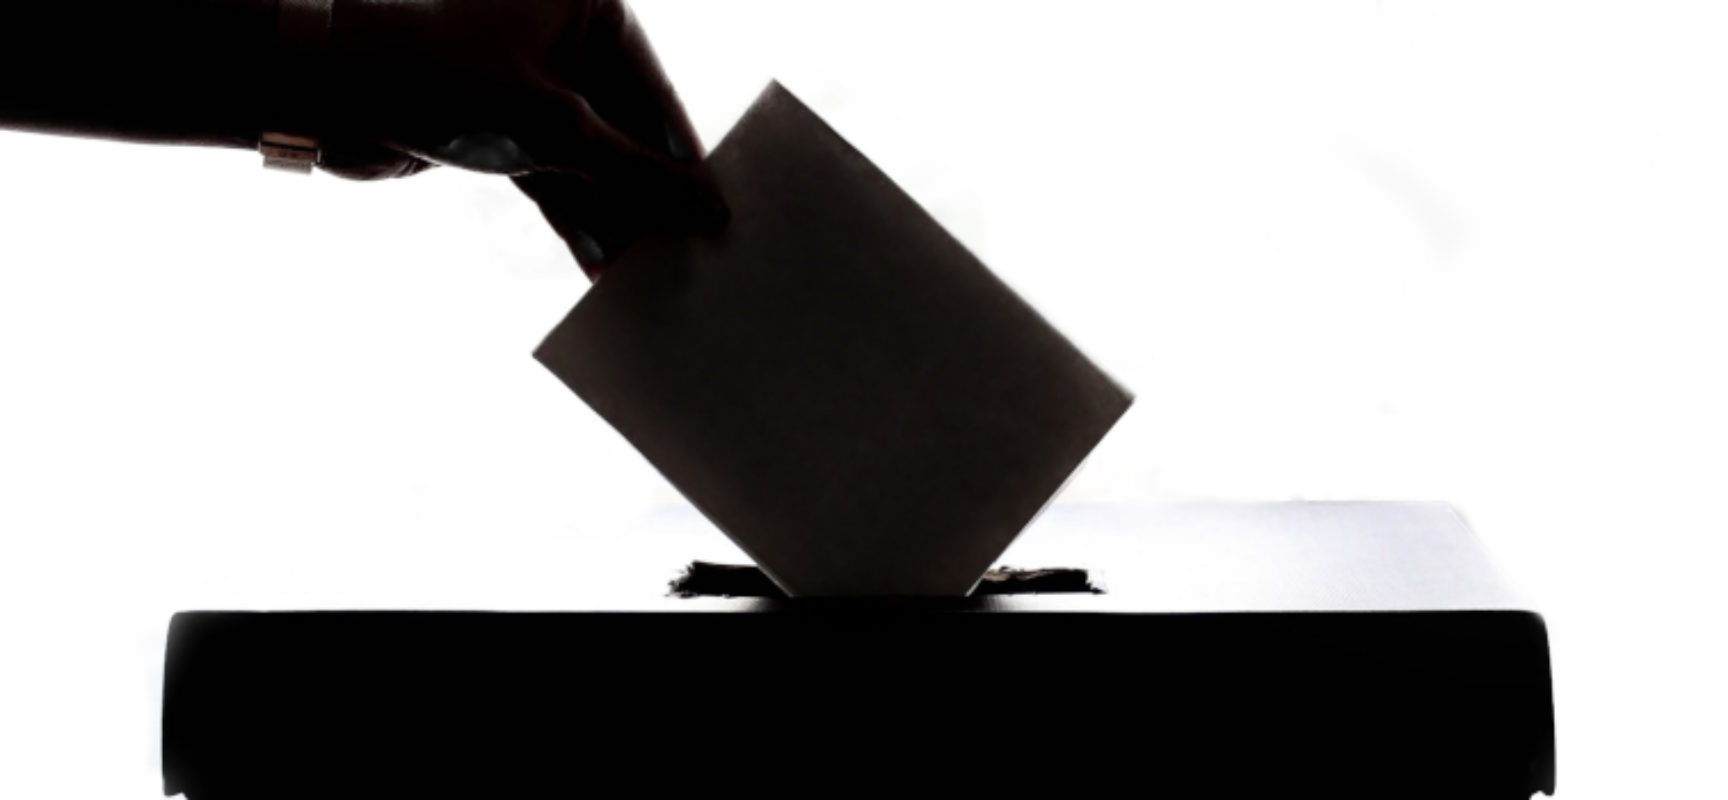 Provincia Bat, domenica l’elezione per scegliere il nuovo presidente